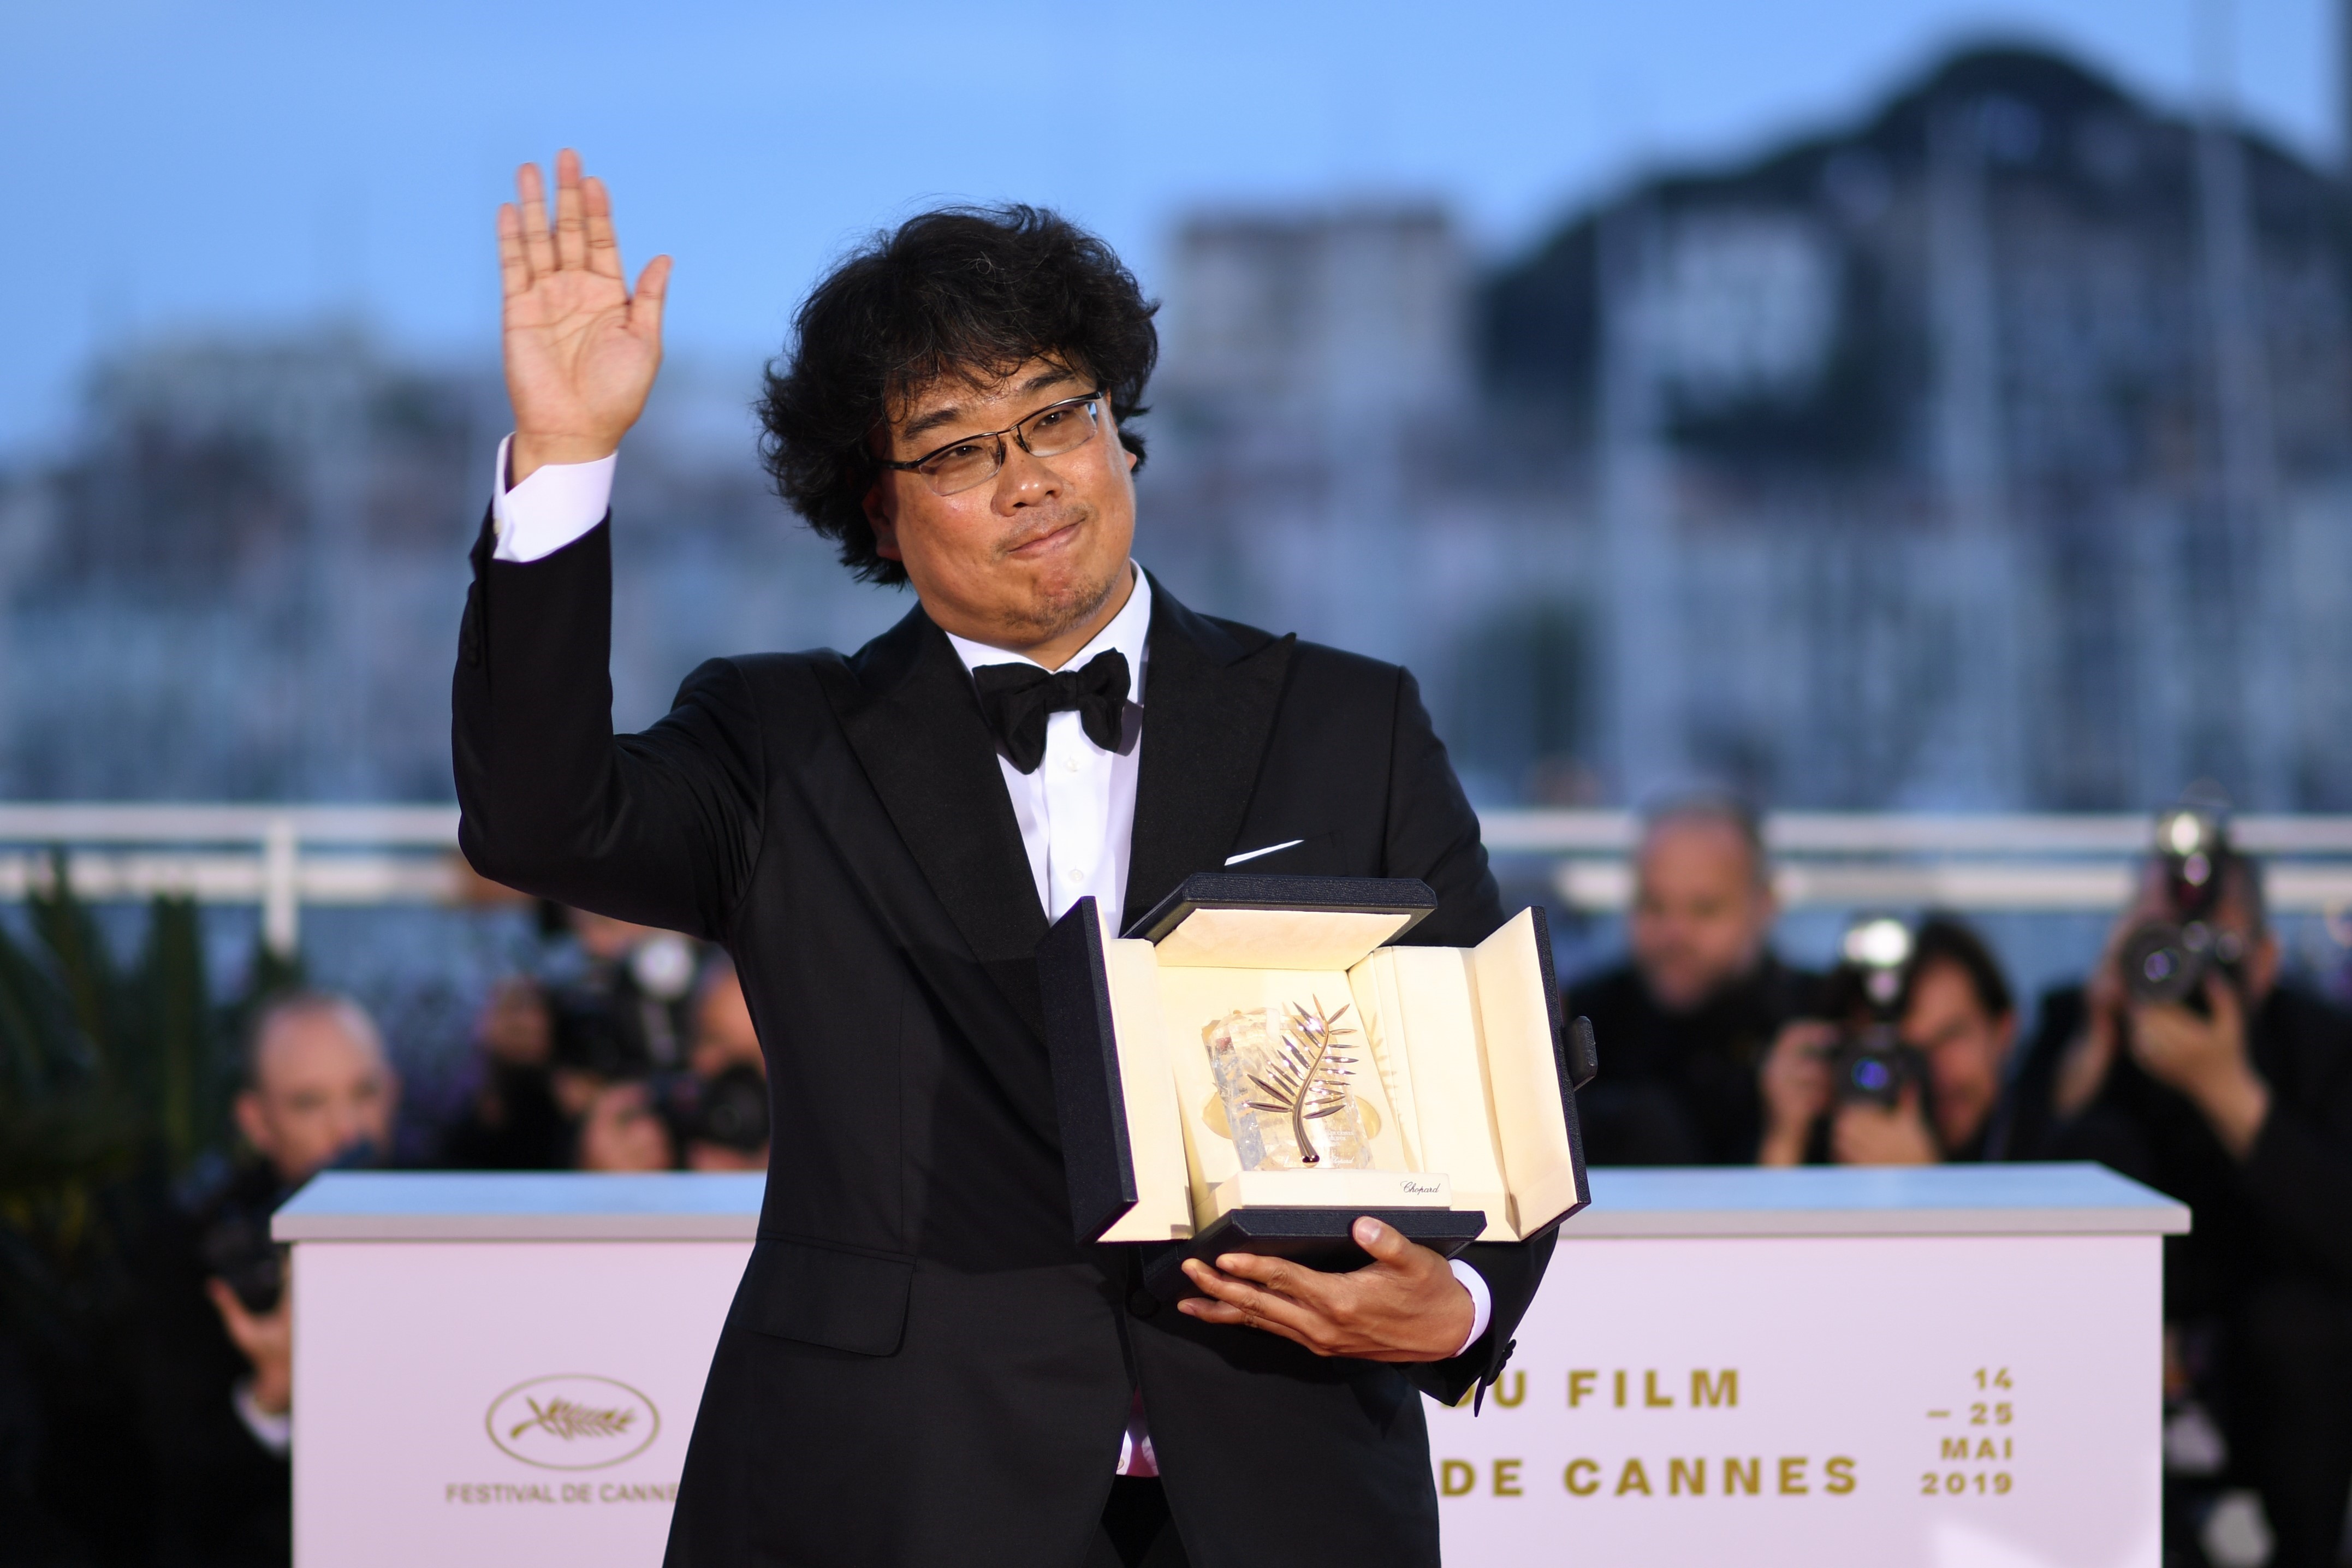 Đạo diễn Bong Joon-Ho nhận giải Cành cọ Vàng cho bộ phim “Parasite” tại Liên hoan phim quốc tế Cannes lần thứ 72 ở Cannes, Pháp ngày 25/5. (Nguồn: AFP/TTXVN)